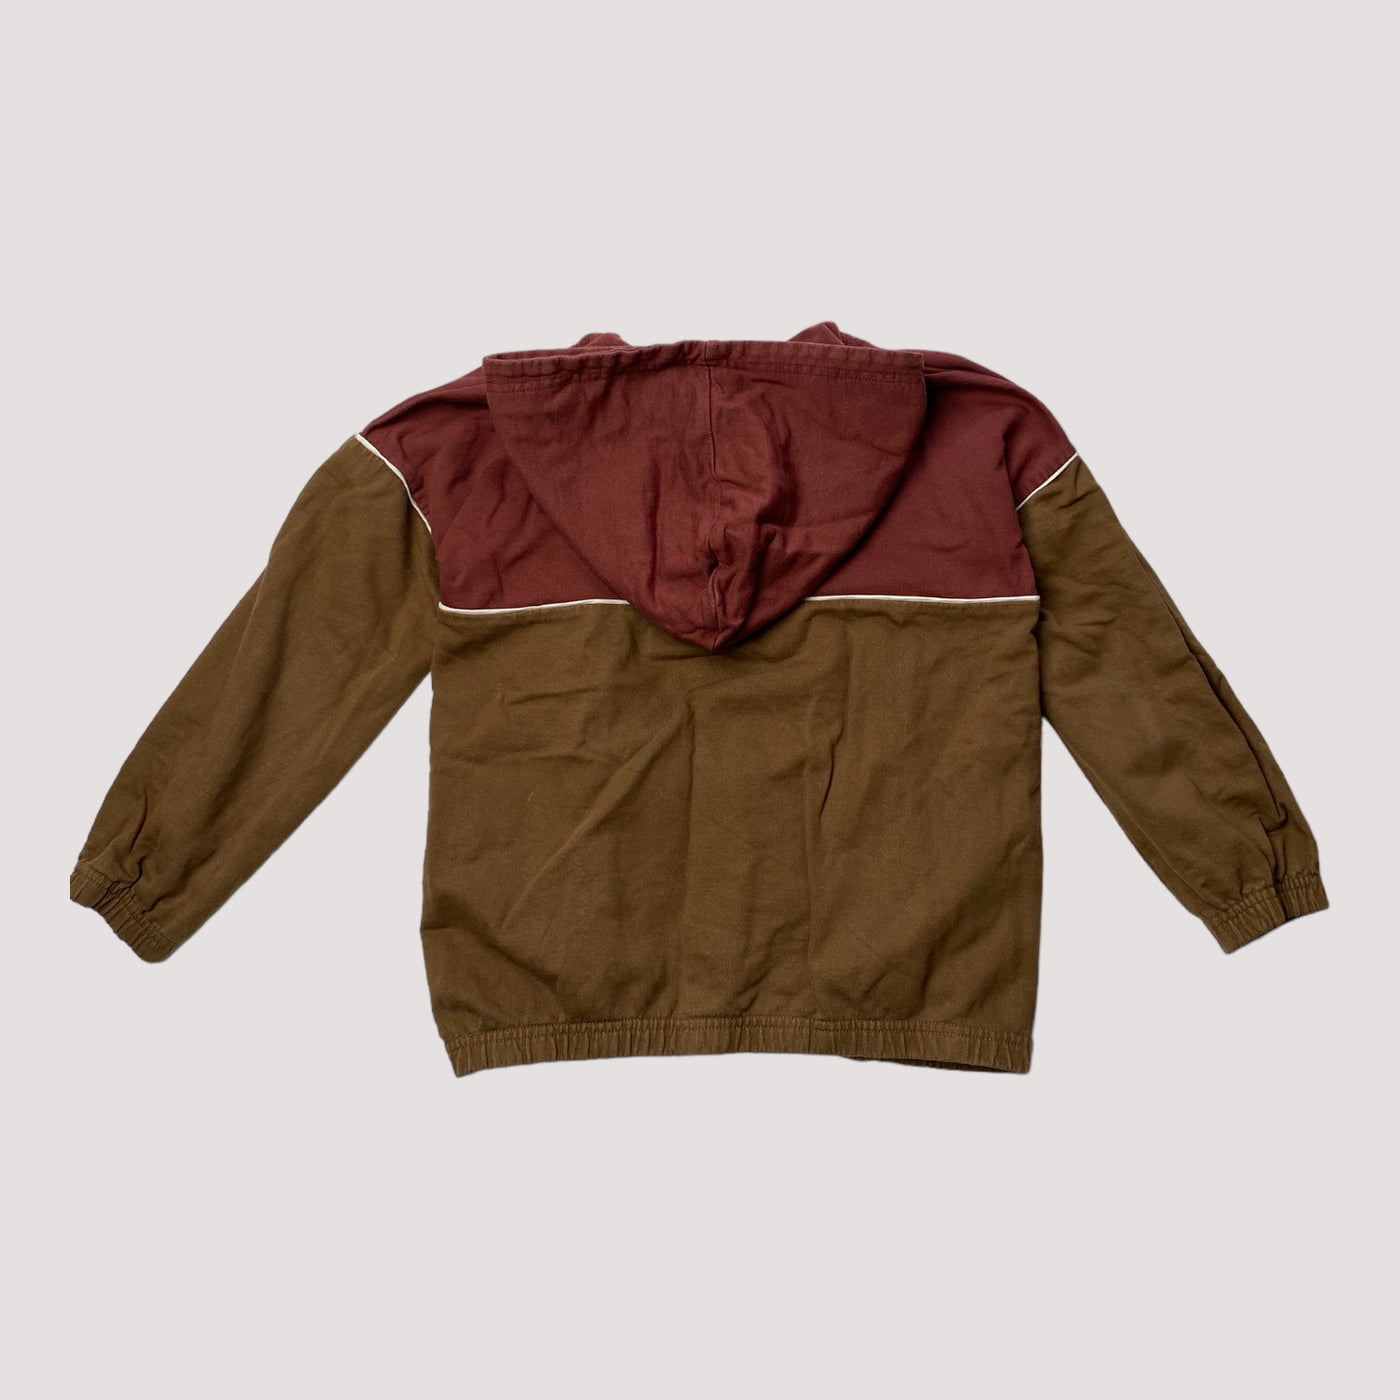 Mainio hoodie, golden brown / dark red | 122/128cm